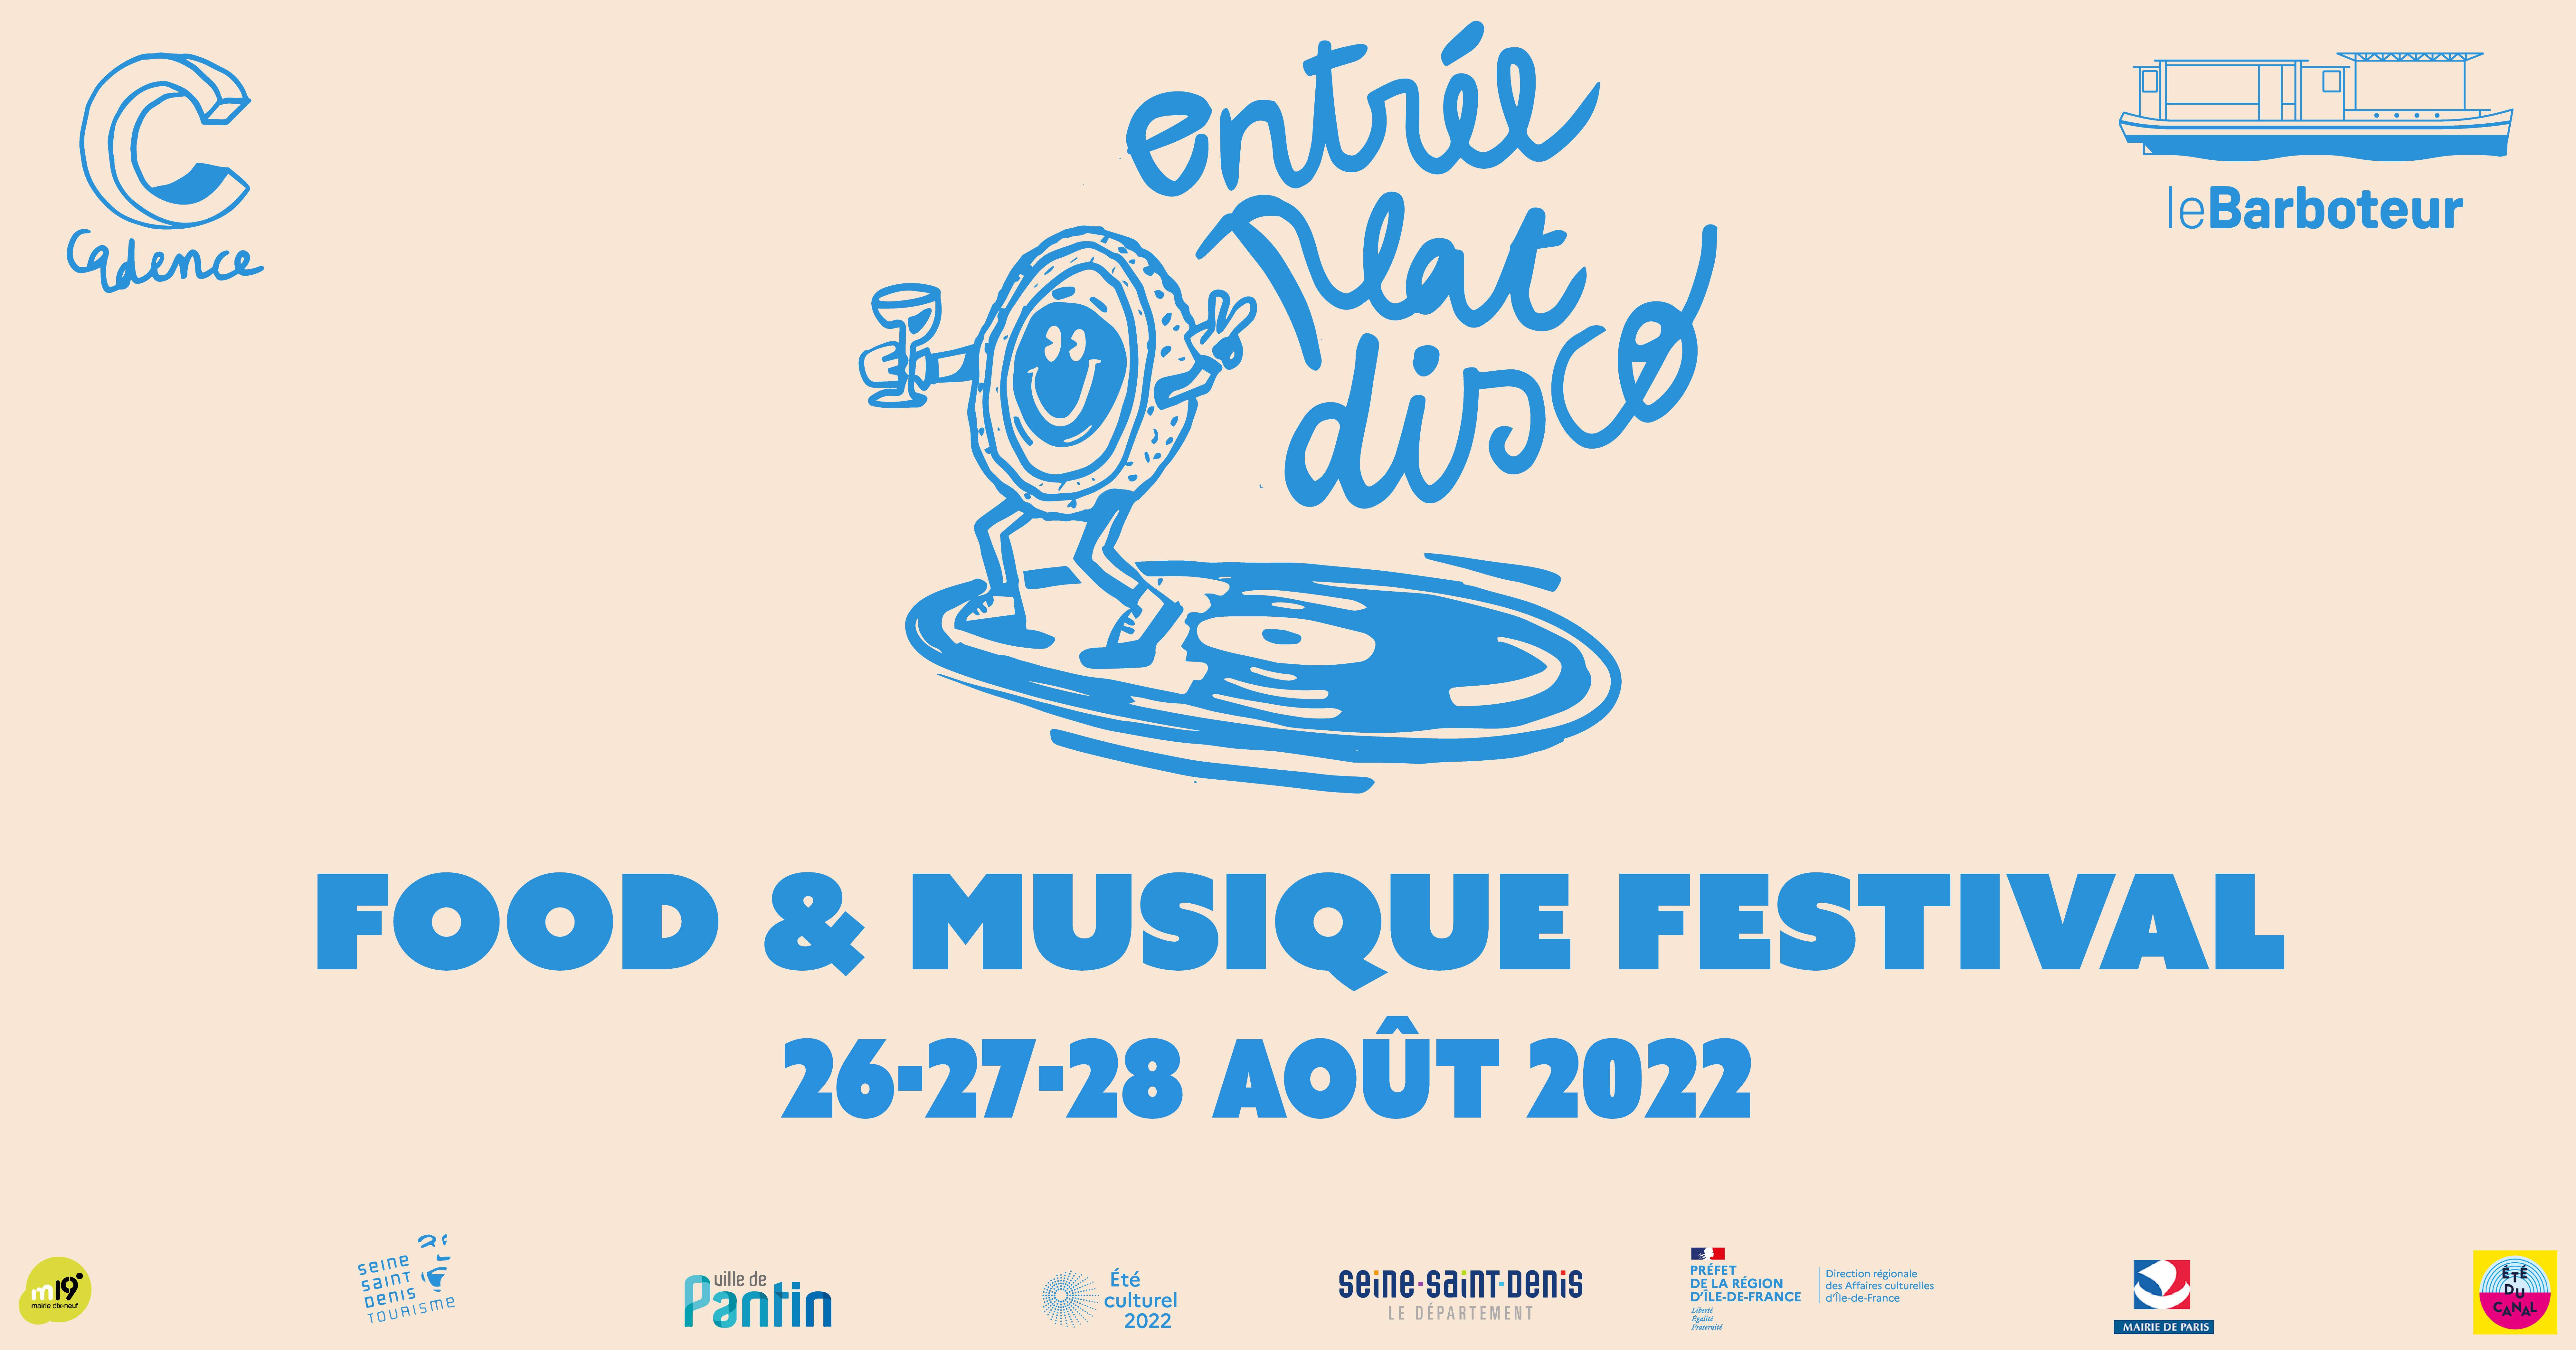 Entrée Plat Disco - Food & Musique Festival - フライヤー表